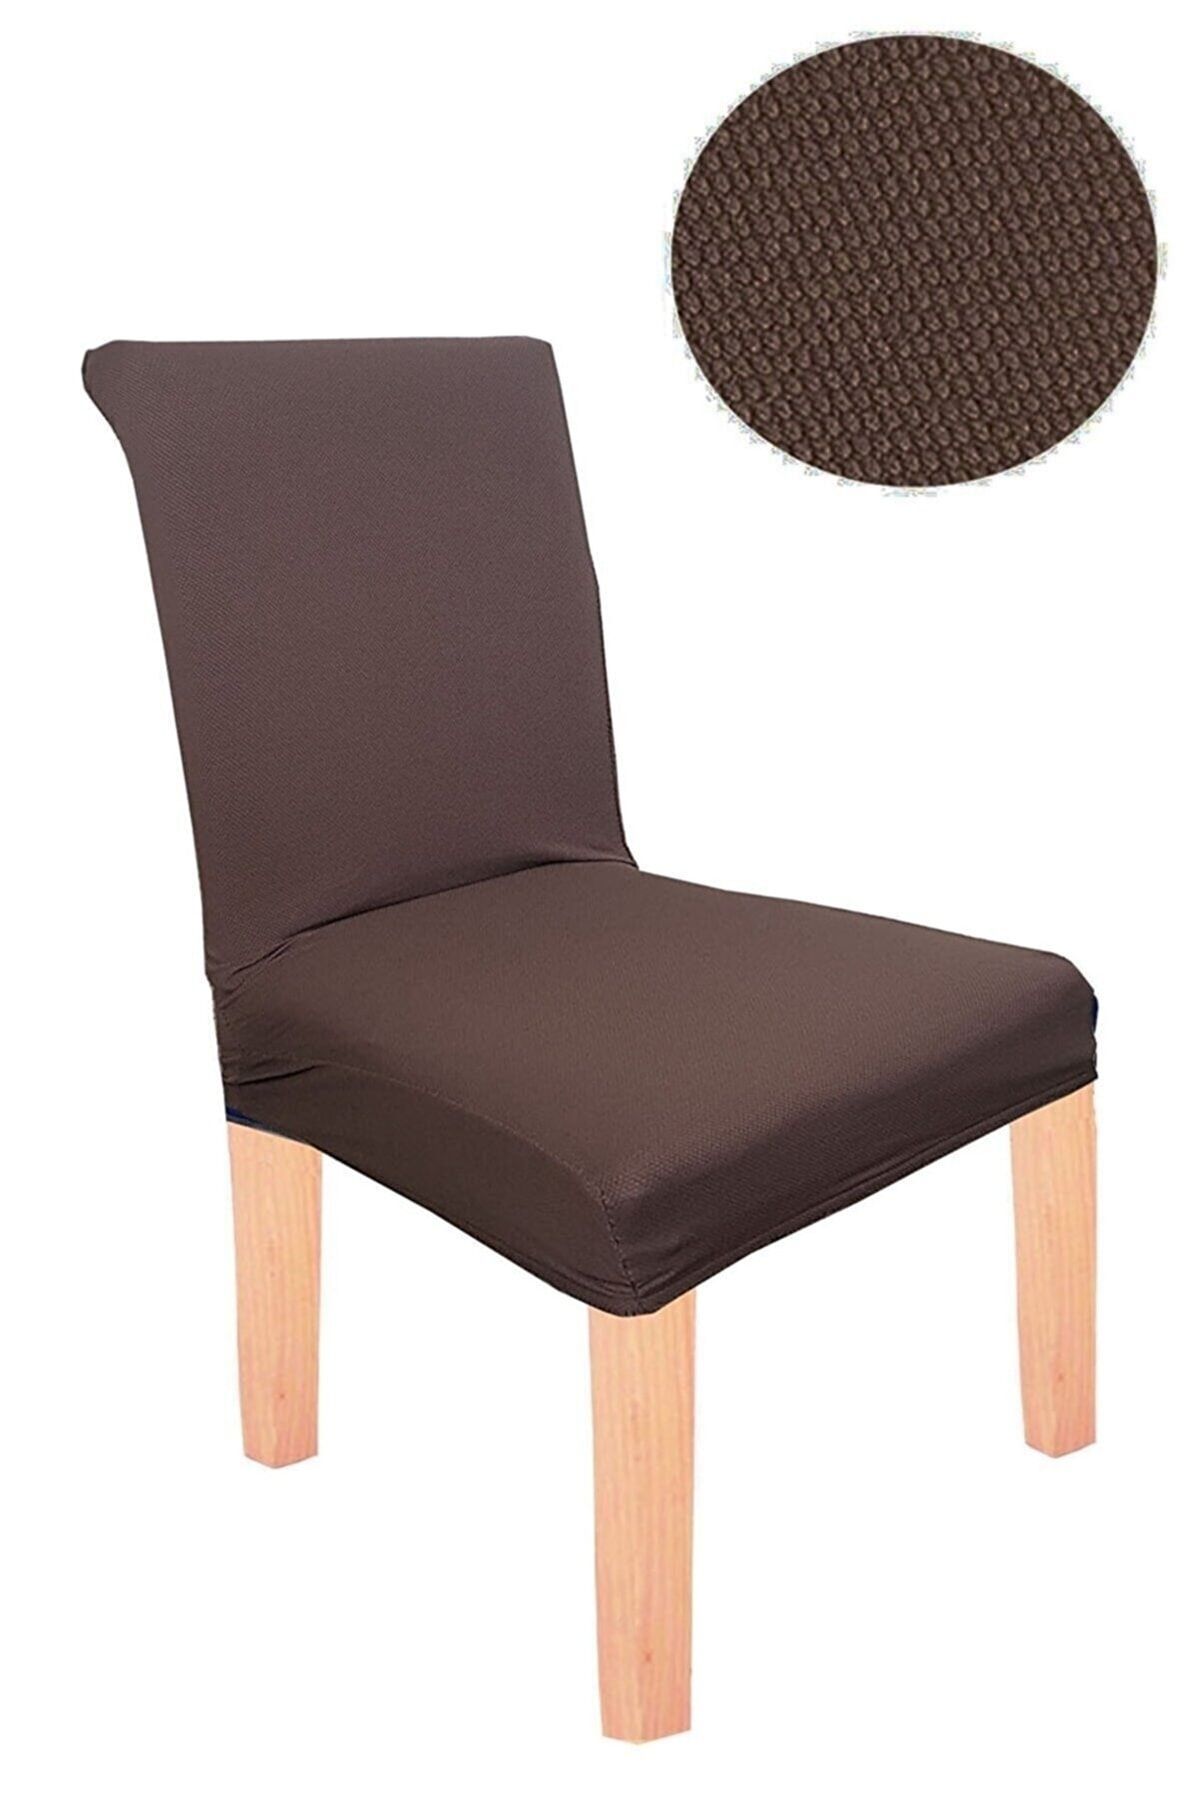 elgeyar Balpeteği Likra Kumaşlı Sandalye Örtüsü  Lastikli  1 Adet Kahverengi